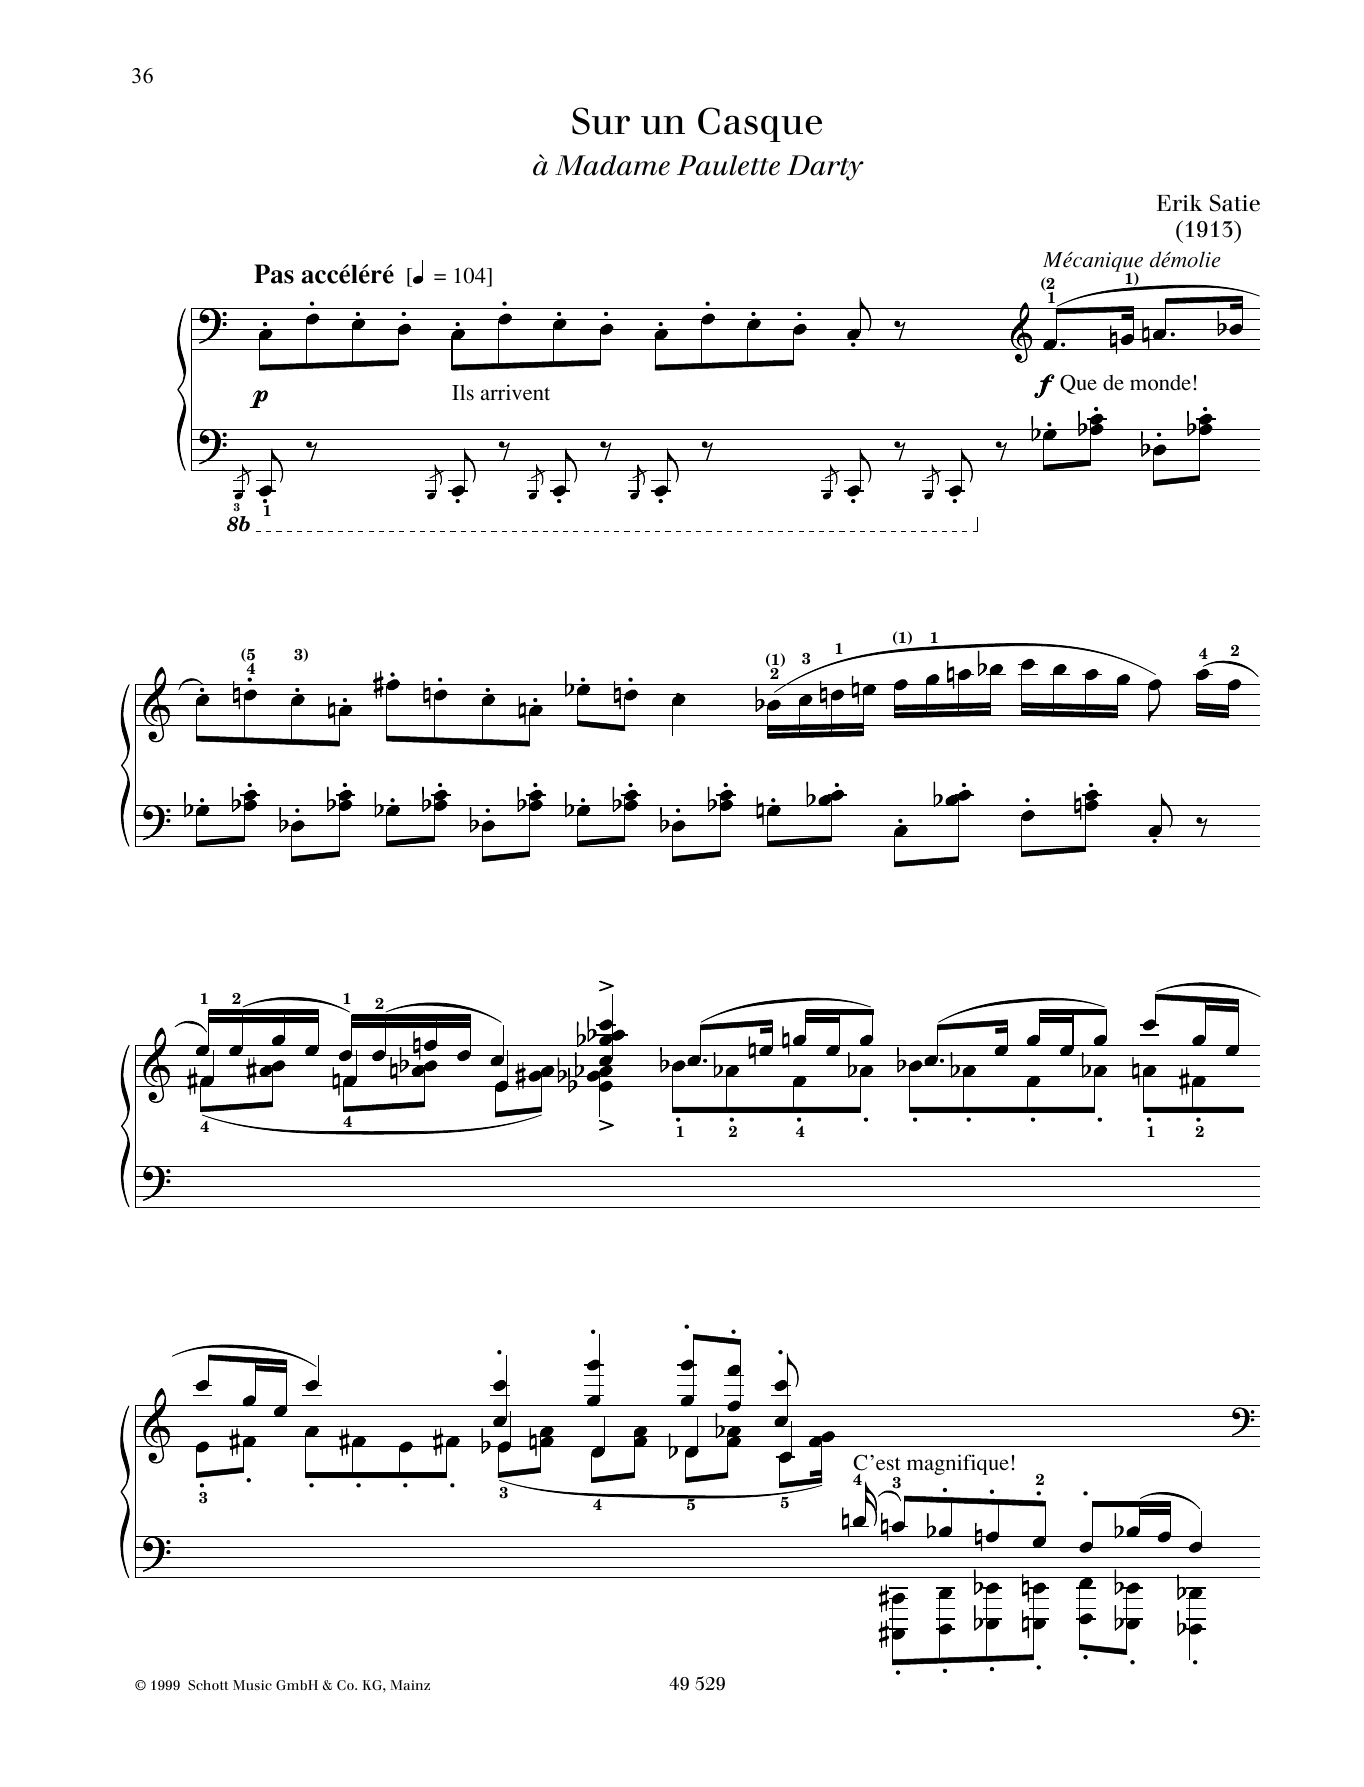 Erik Satie Sur un Casque Sheet Music Notes & Chords for Piano Solo - Download or Print PDF